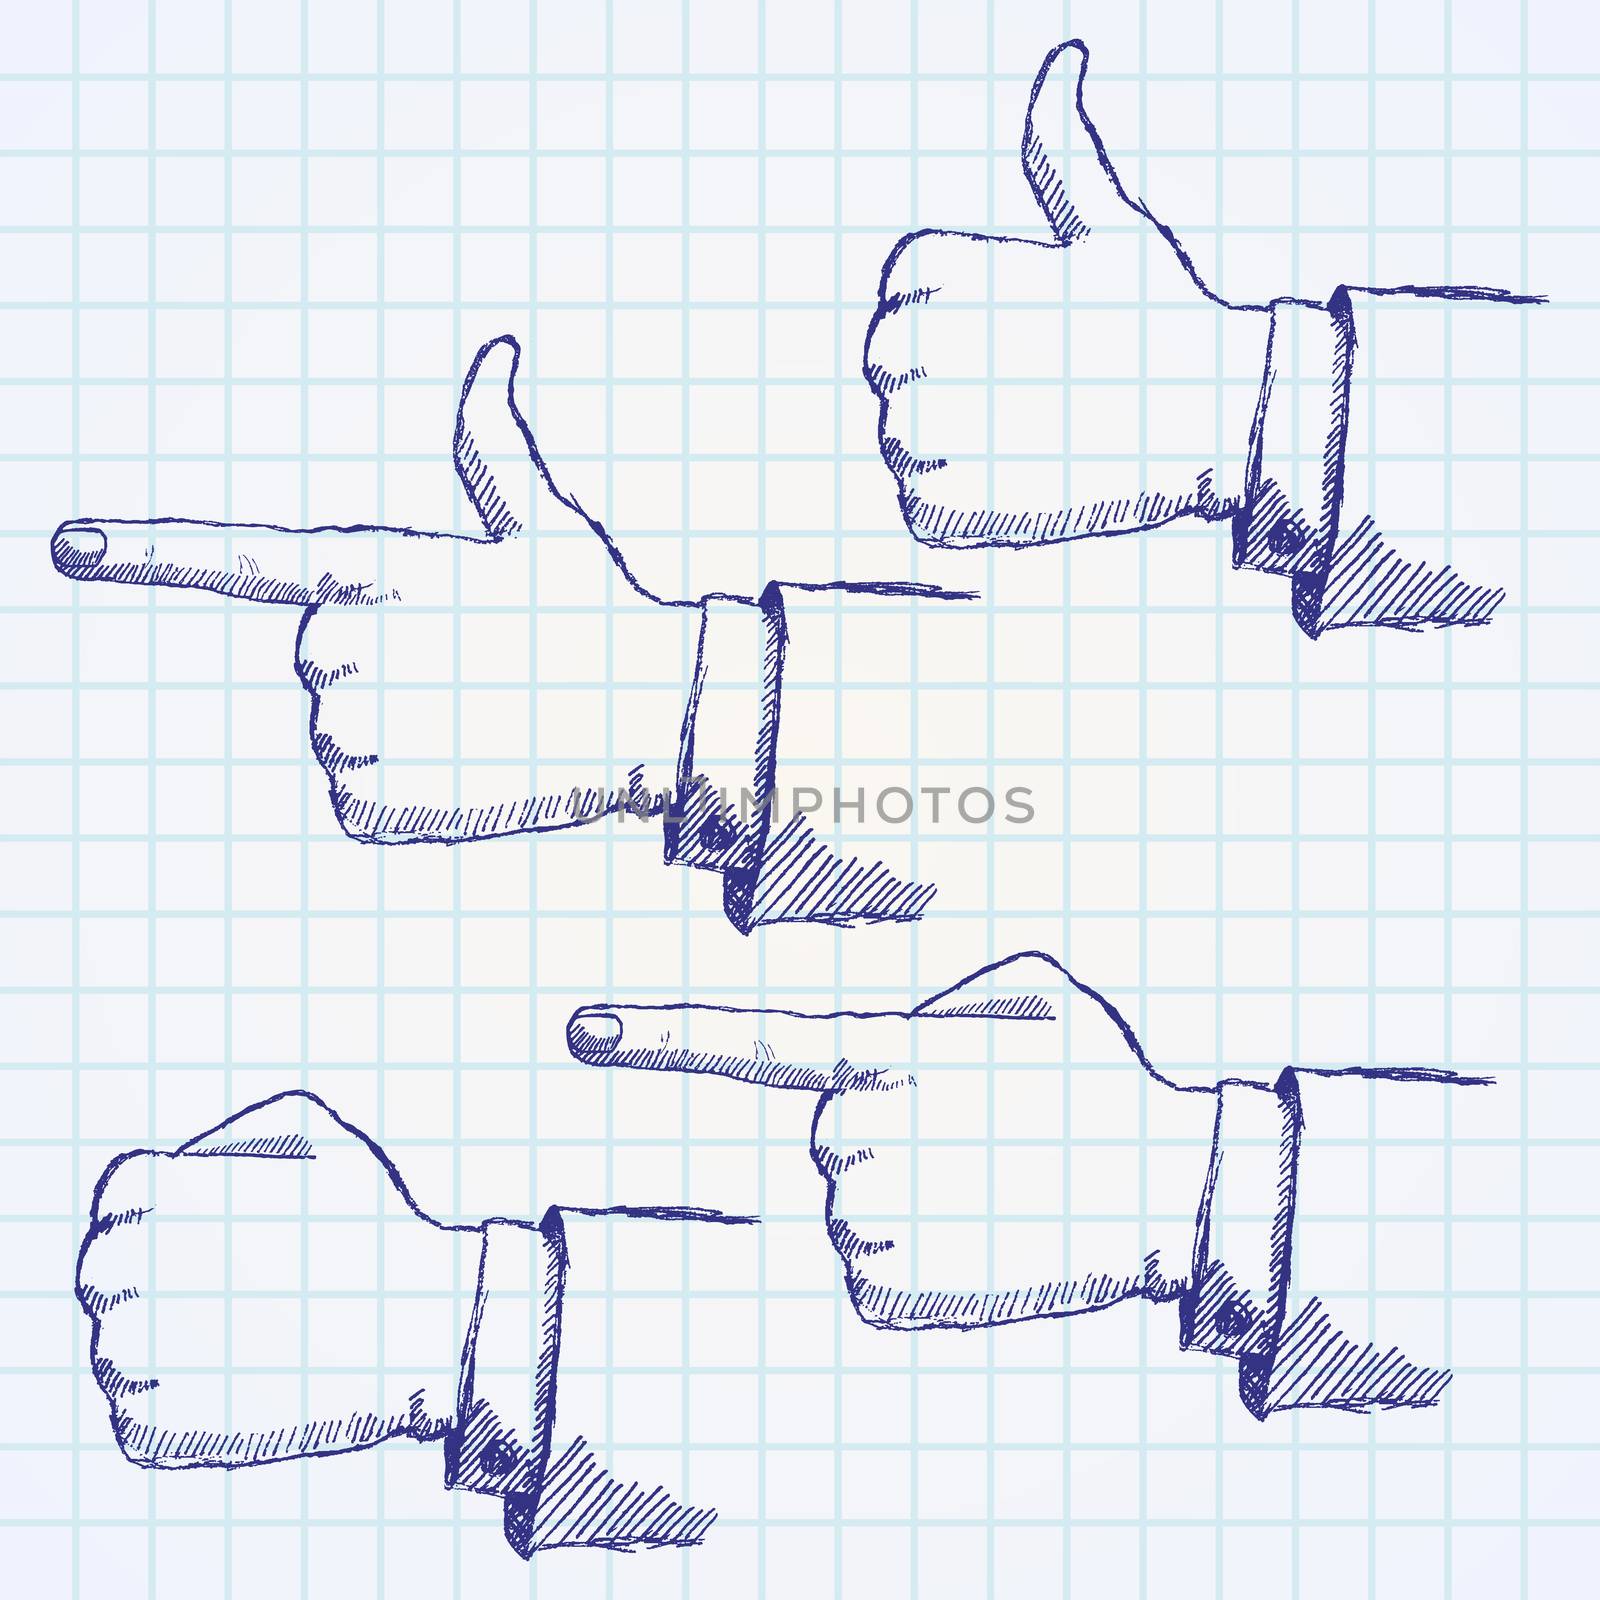 Handdrawn sketch hands set on paper notebook